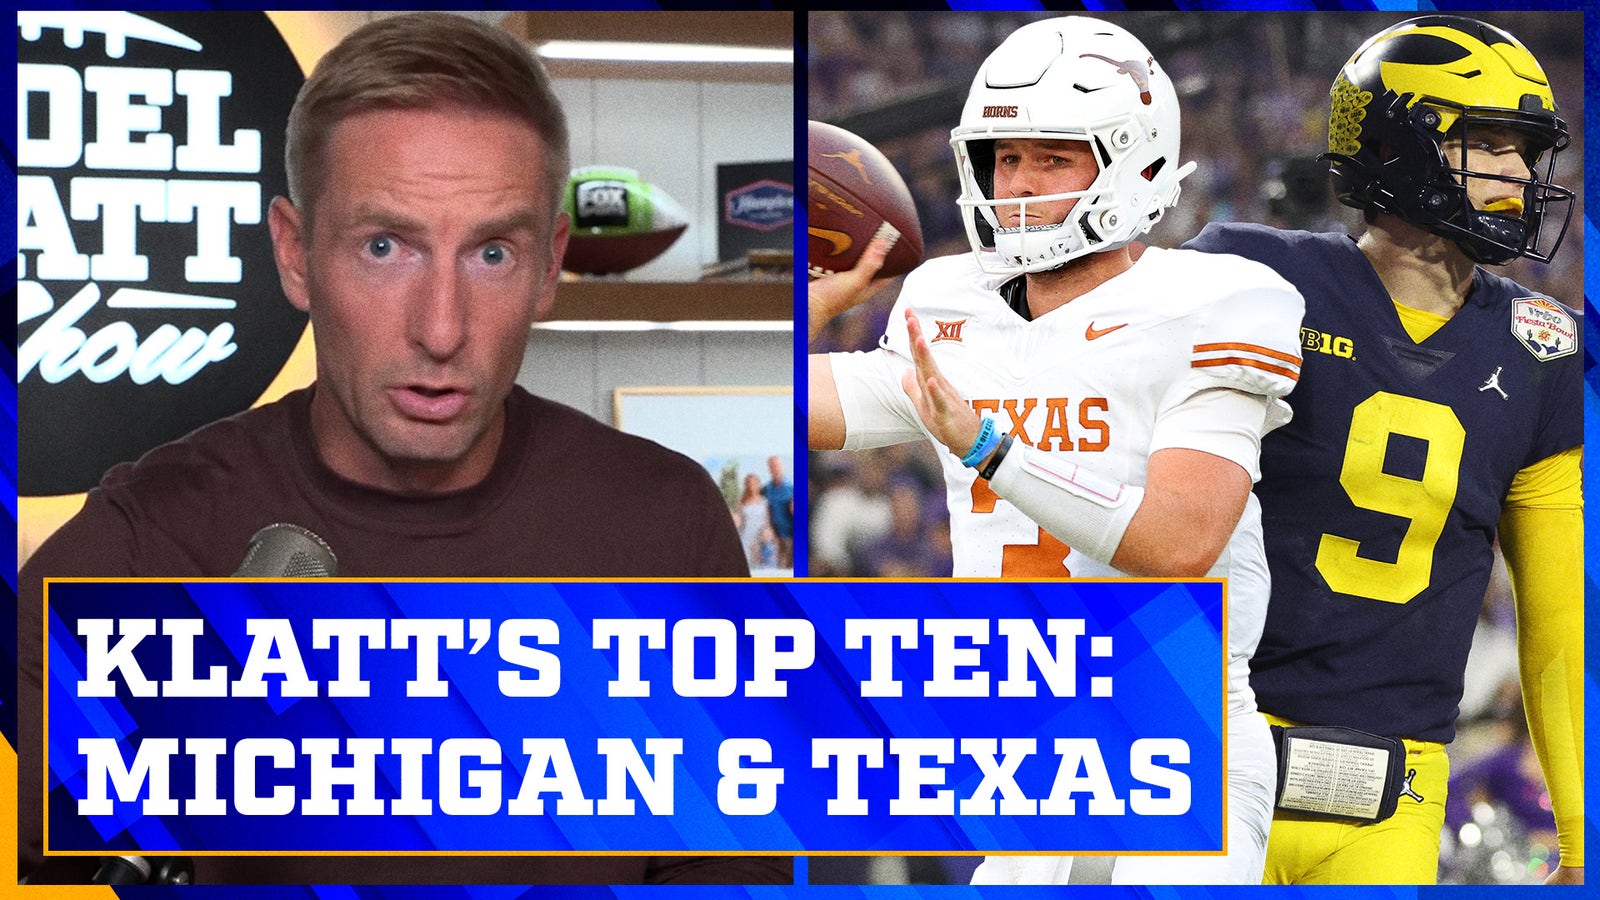 Michigan and Texas headline Joel Klatt's Top 10 after Week 5 